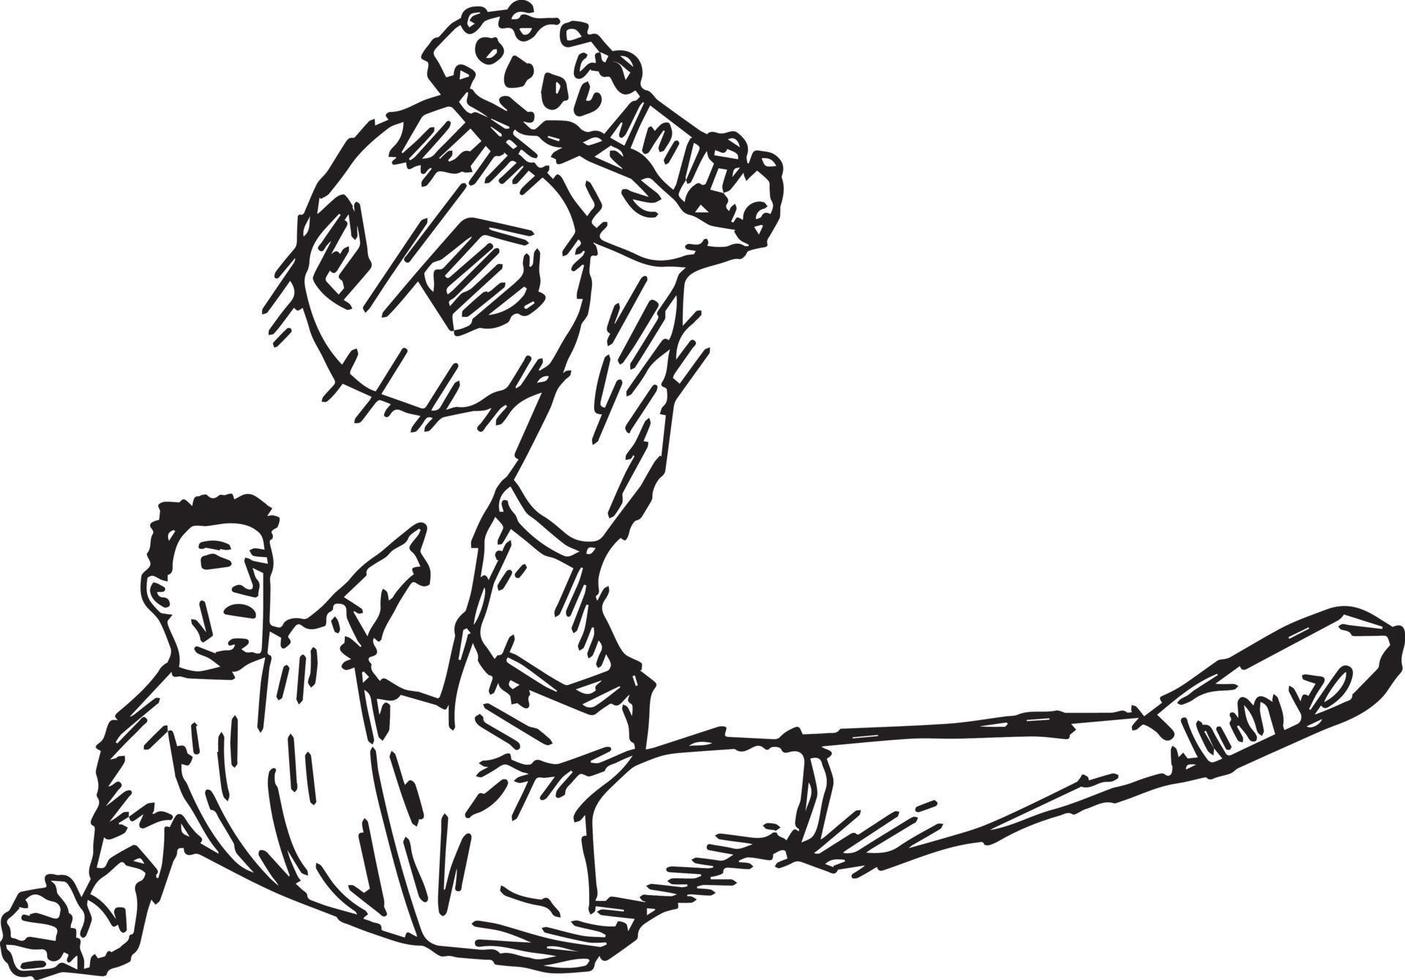 fotboll volley spark - vektor illustration skiss handritad